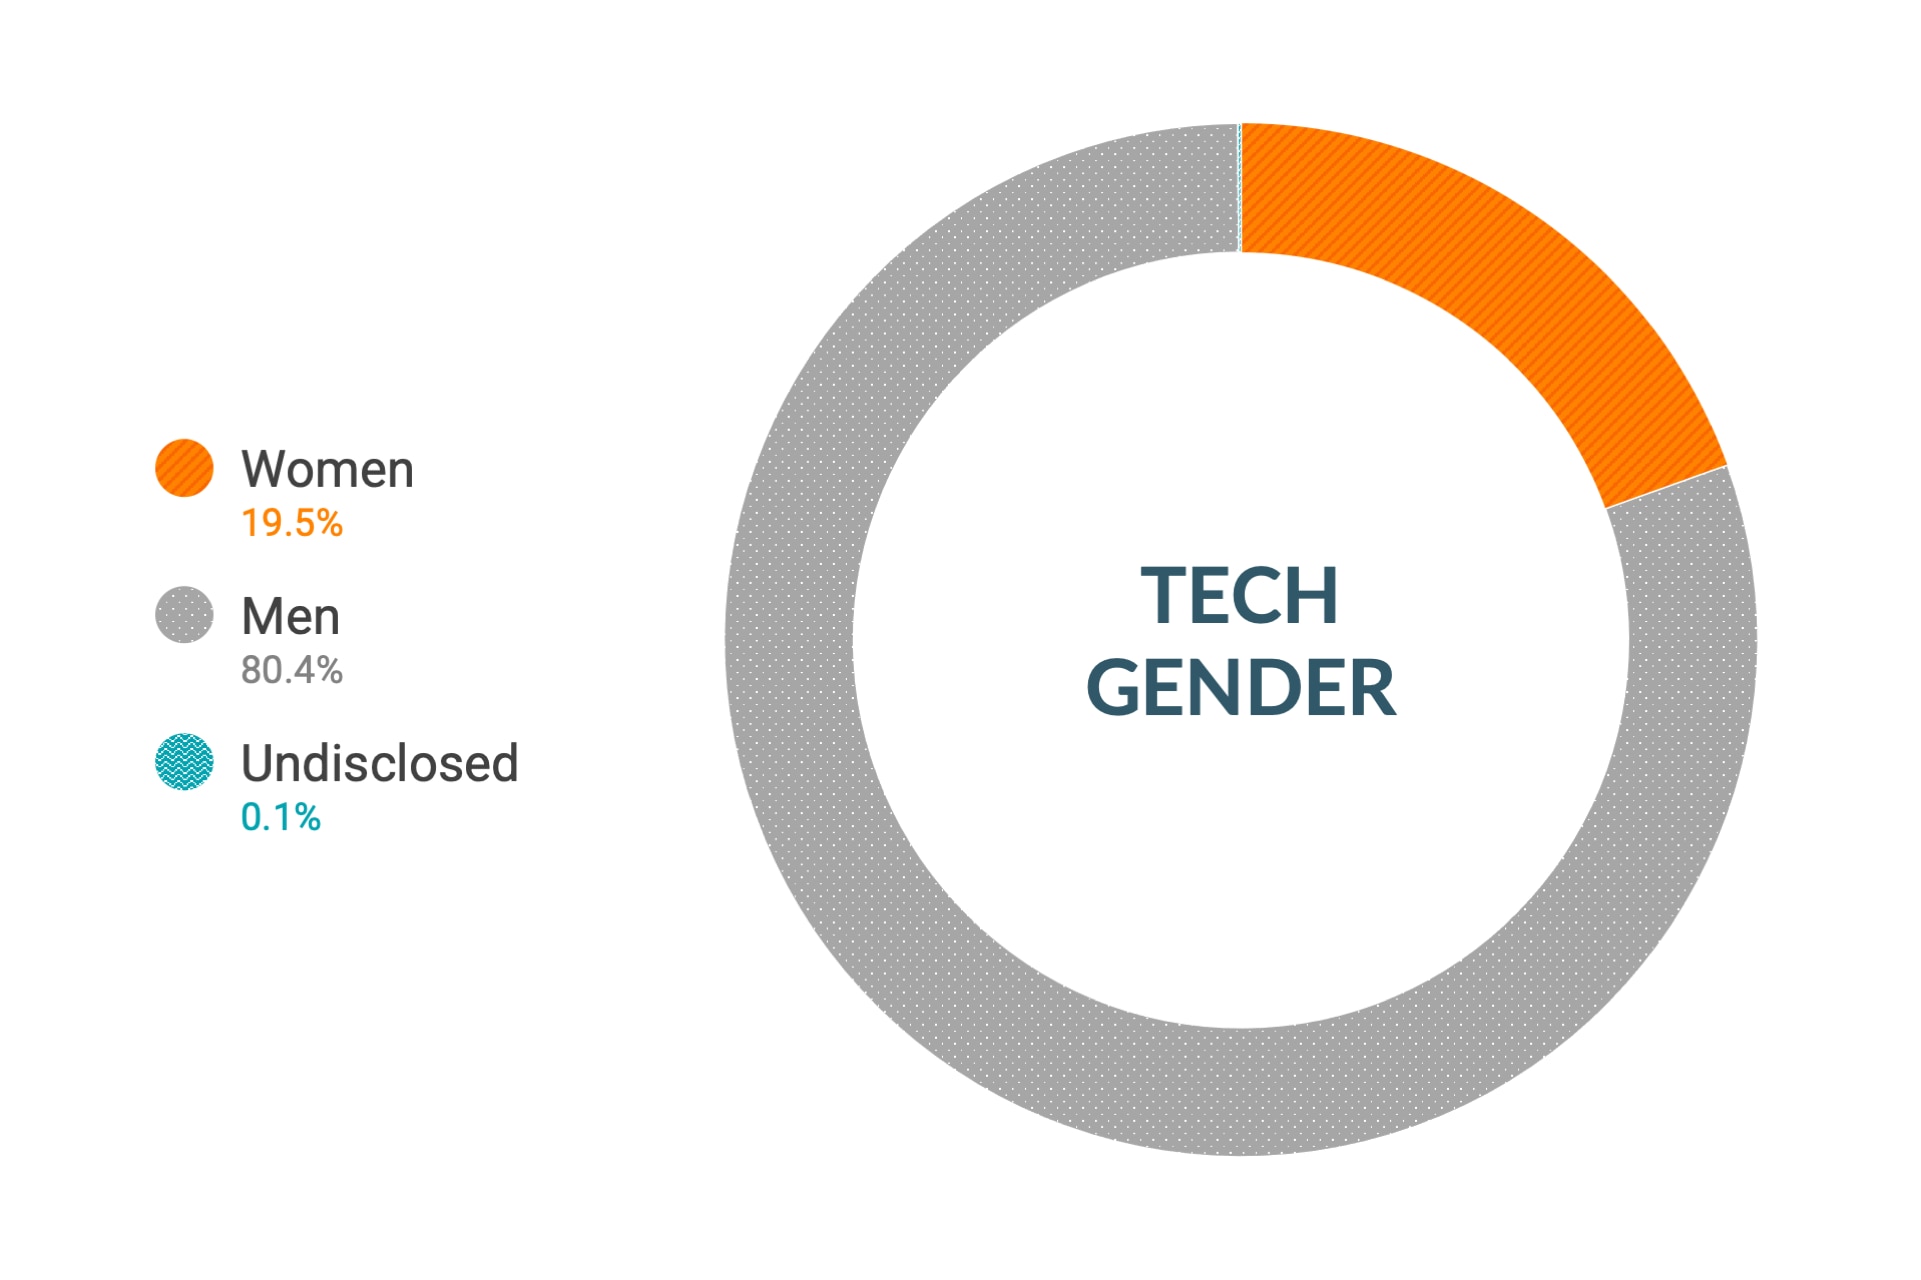 Dane firmy Cloudera dotyczące różnorodności i integracji w zakresie płci według stanowisk technicznych i inżynieryjnych w skali globalnej: kobiety 16%, mężczyźni 83,9%, nieujawnione 0,1%